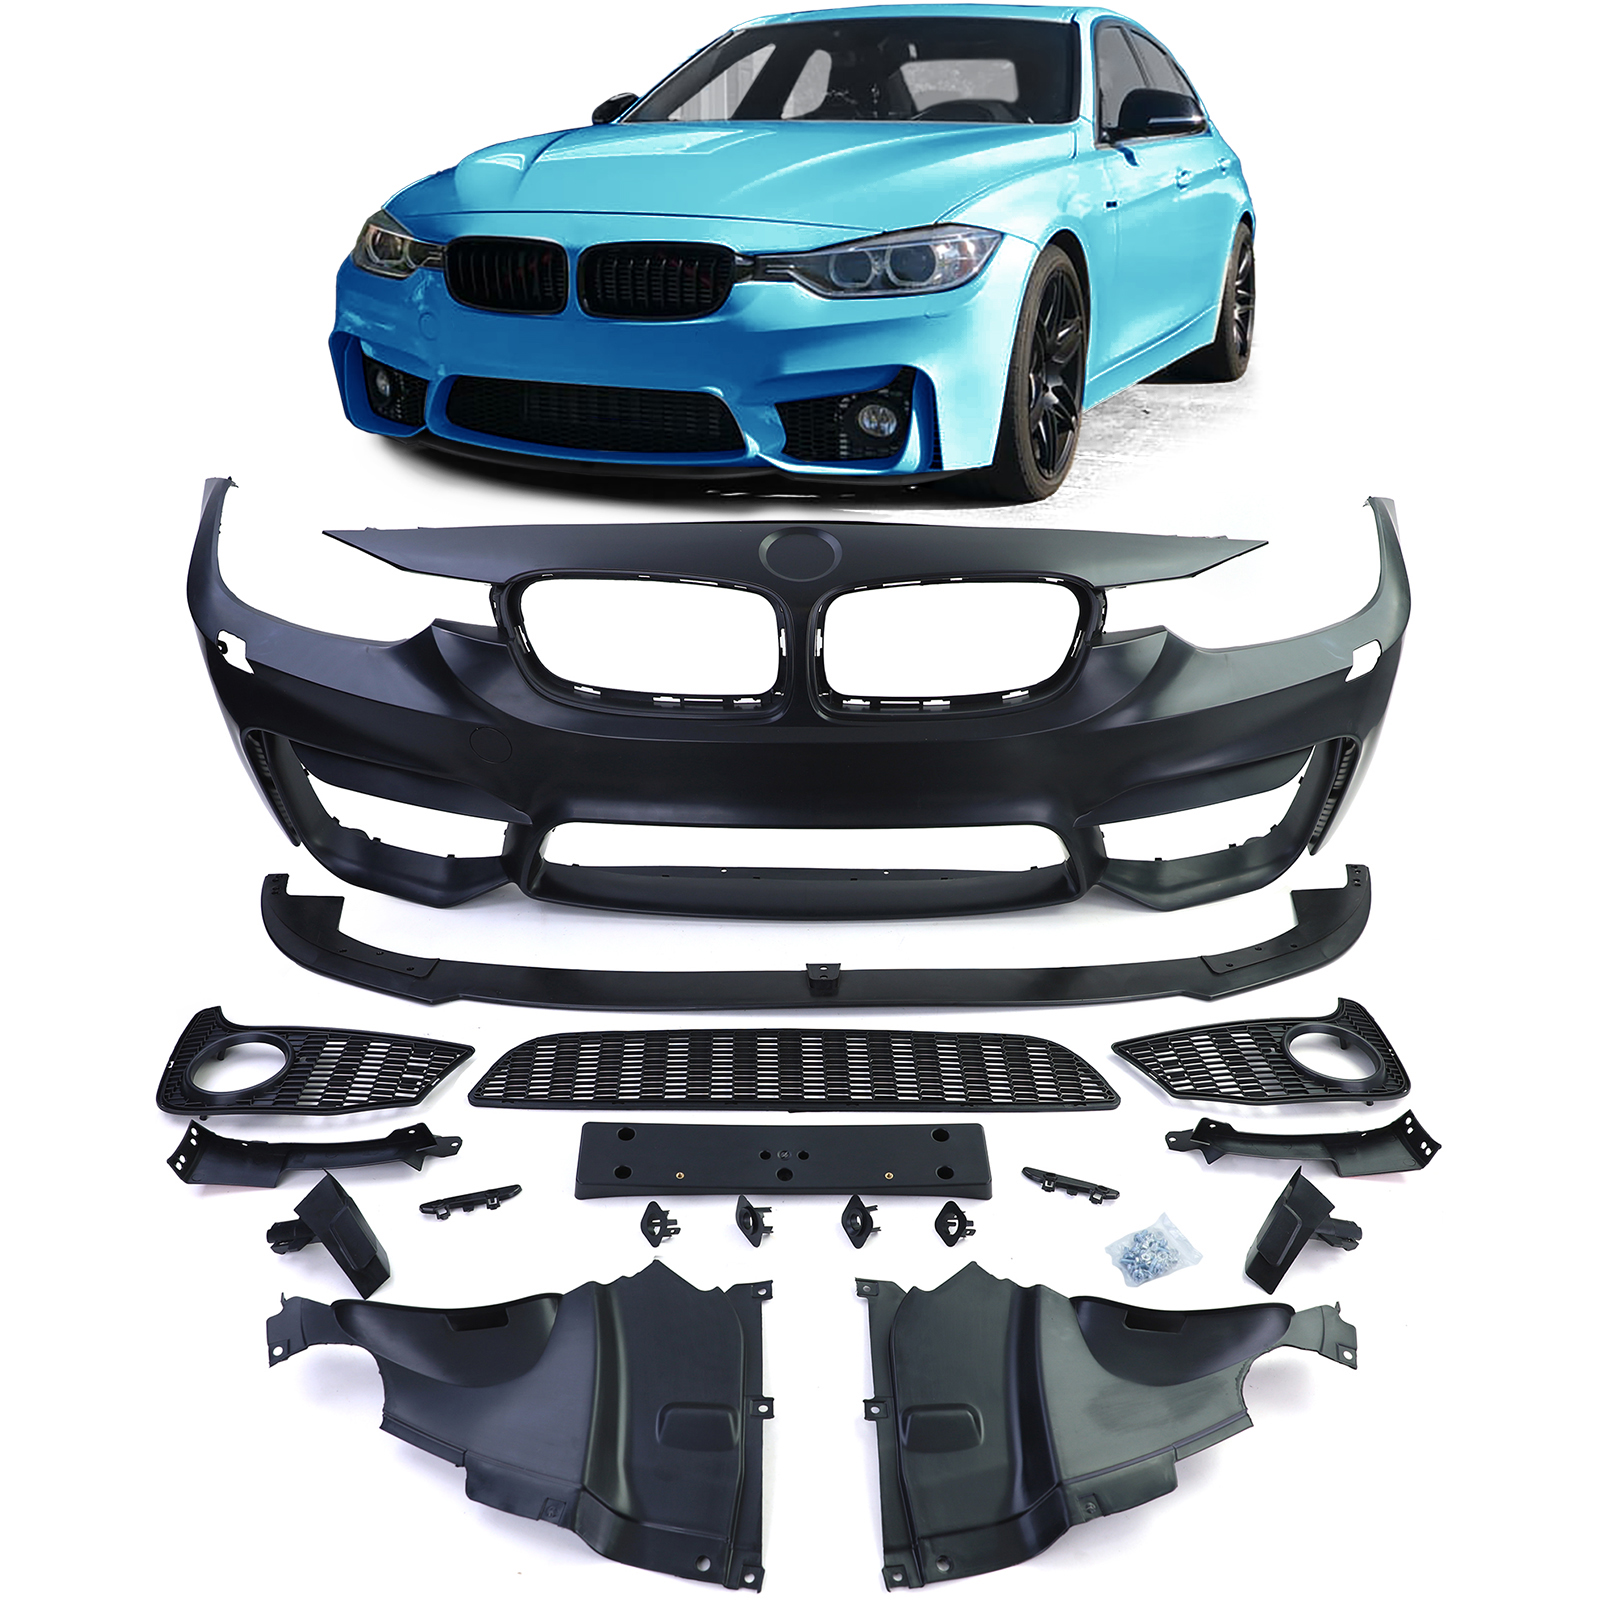 2x LED Nebelscheinwerfer Klarglas Set passt für BMW F30 F31 F20